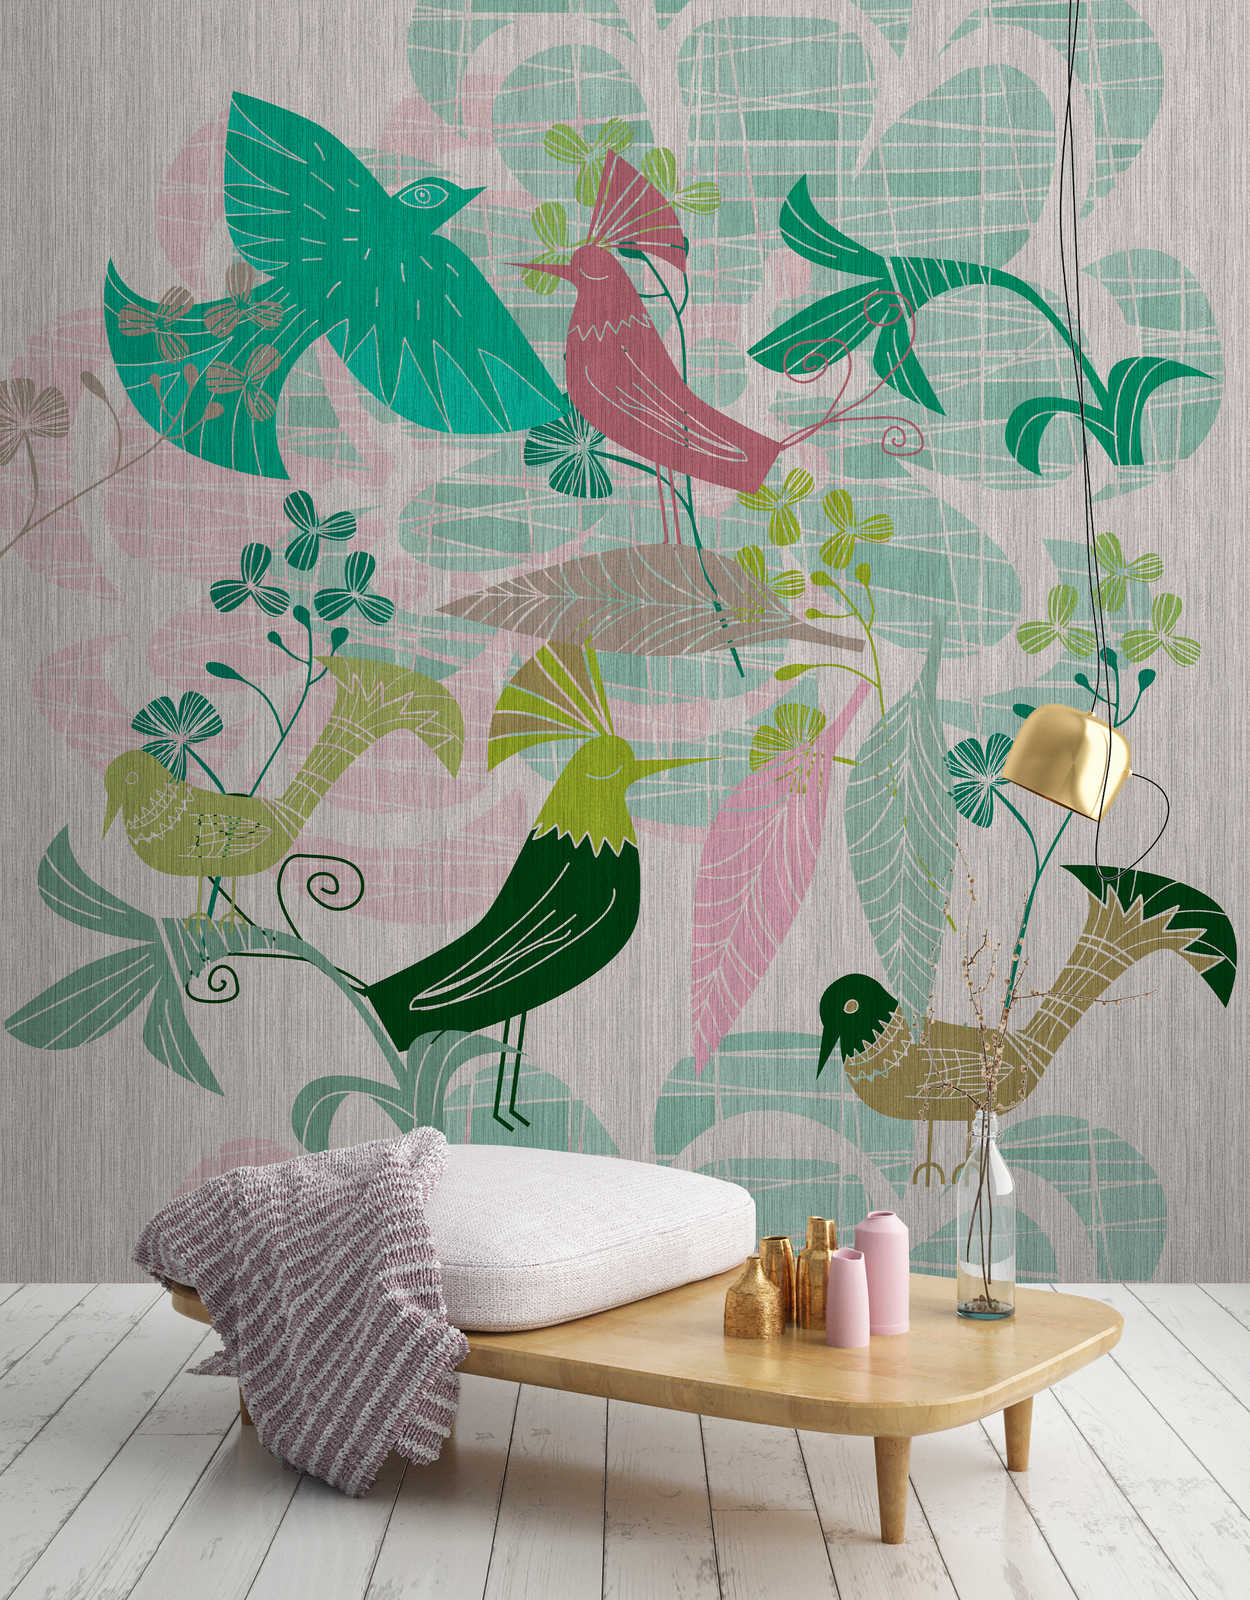             Birdland 3 - Papel pintado con motivos de pájaros verdes y rosas de estilo retro
        